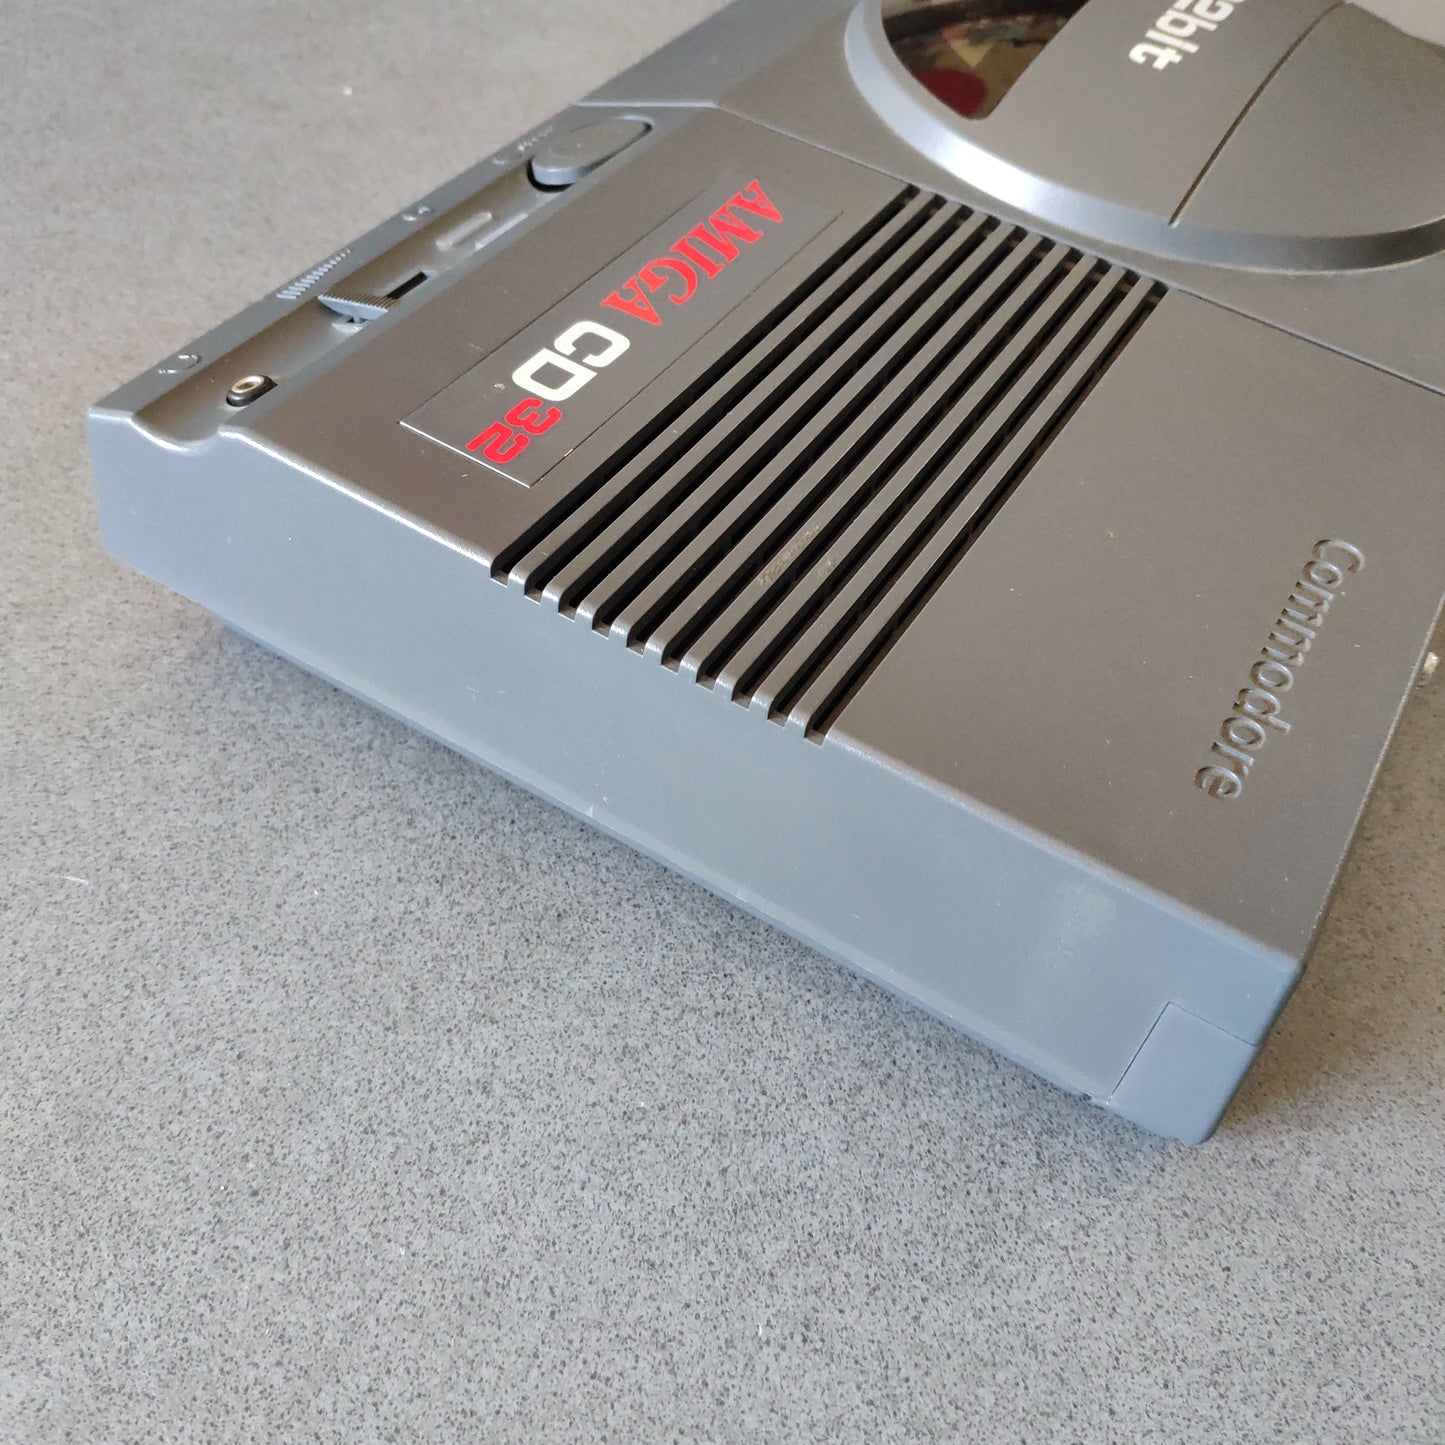 Commodore Amiga Cd 32